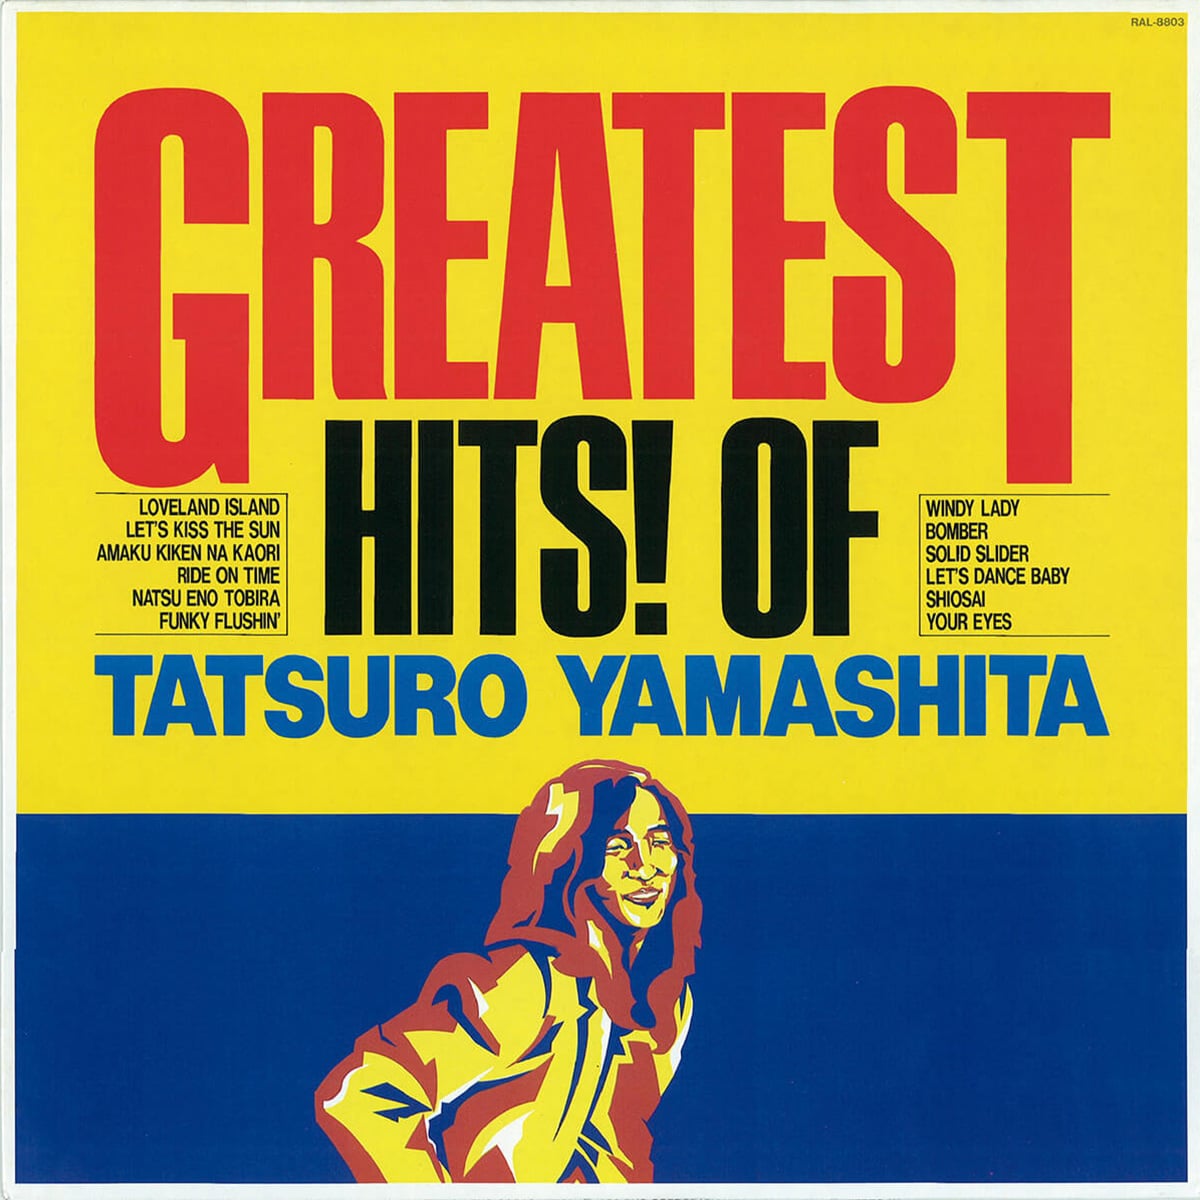 高原宏デザインの『GREATEST HITS! OF TATSURO YAMASHITA』山下達郎